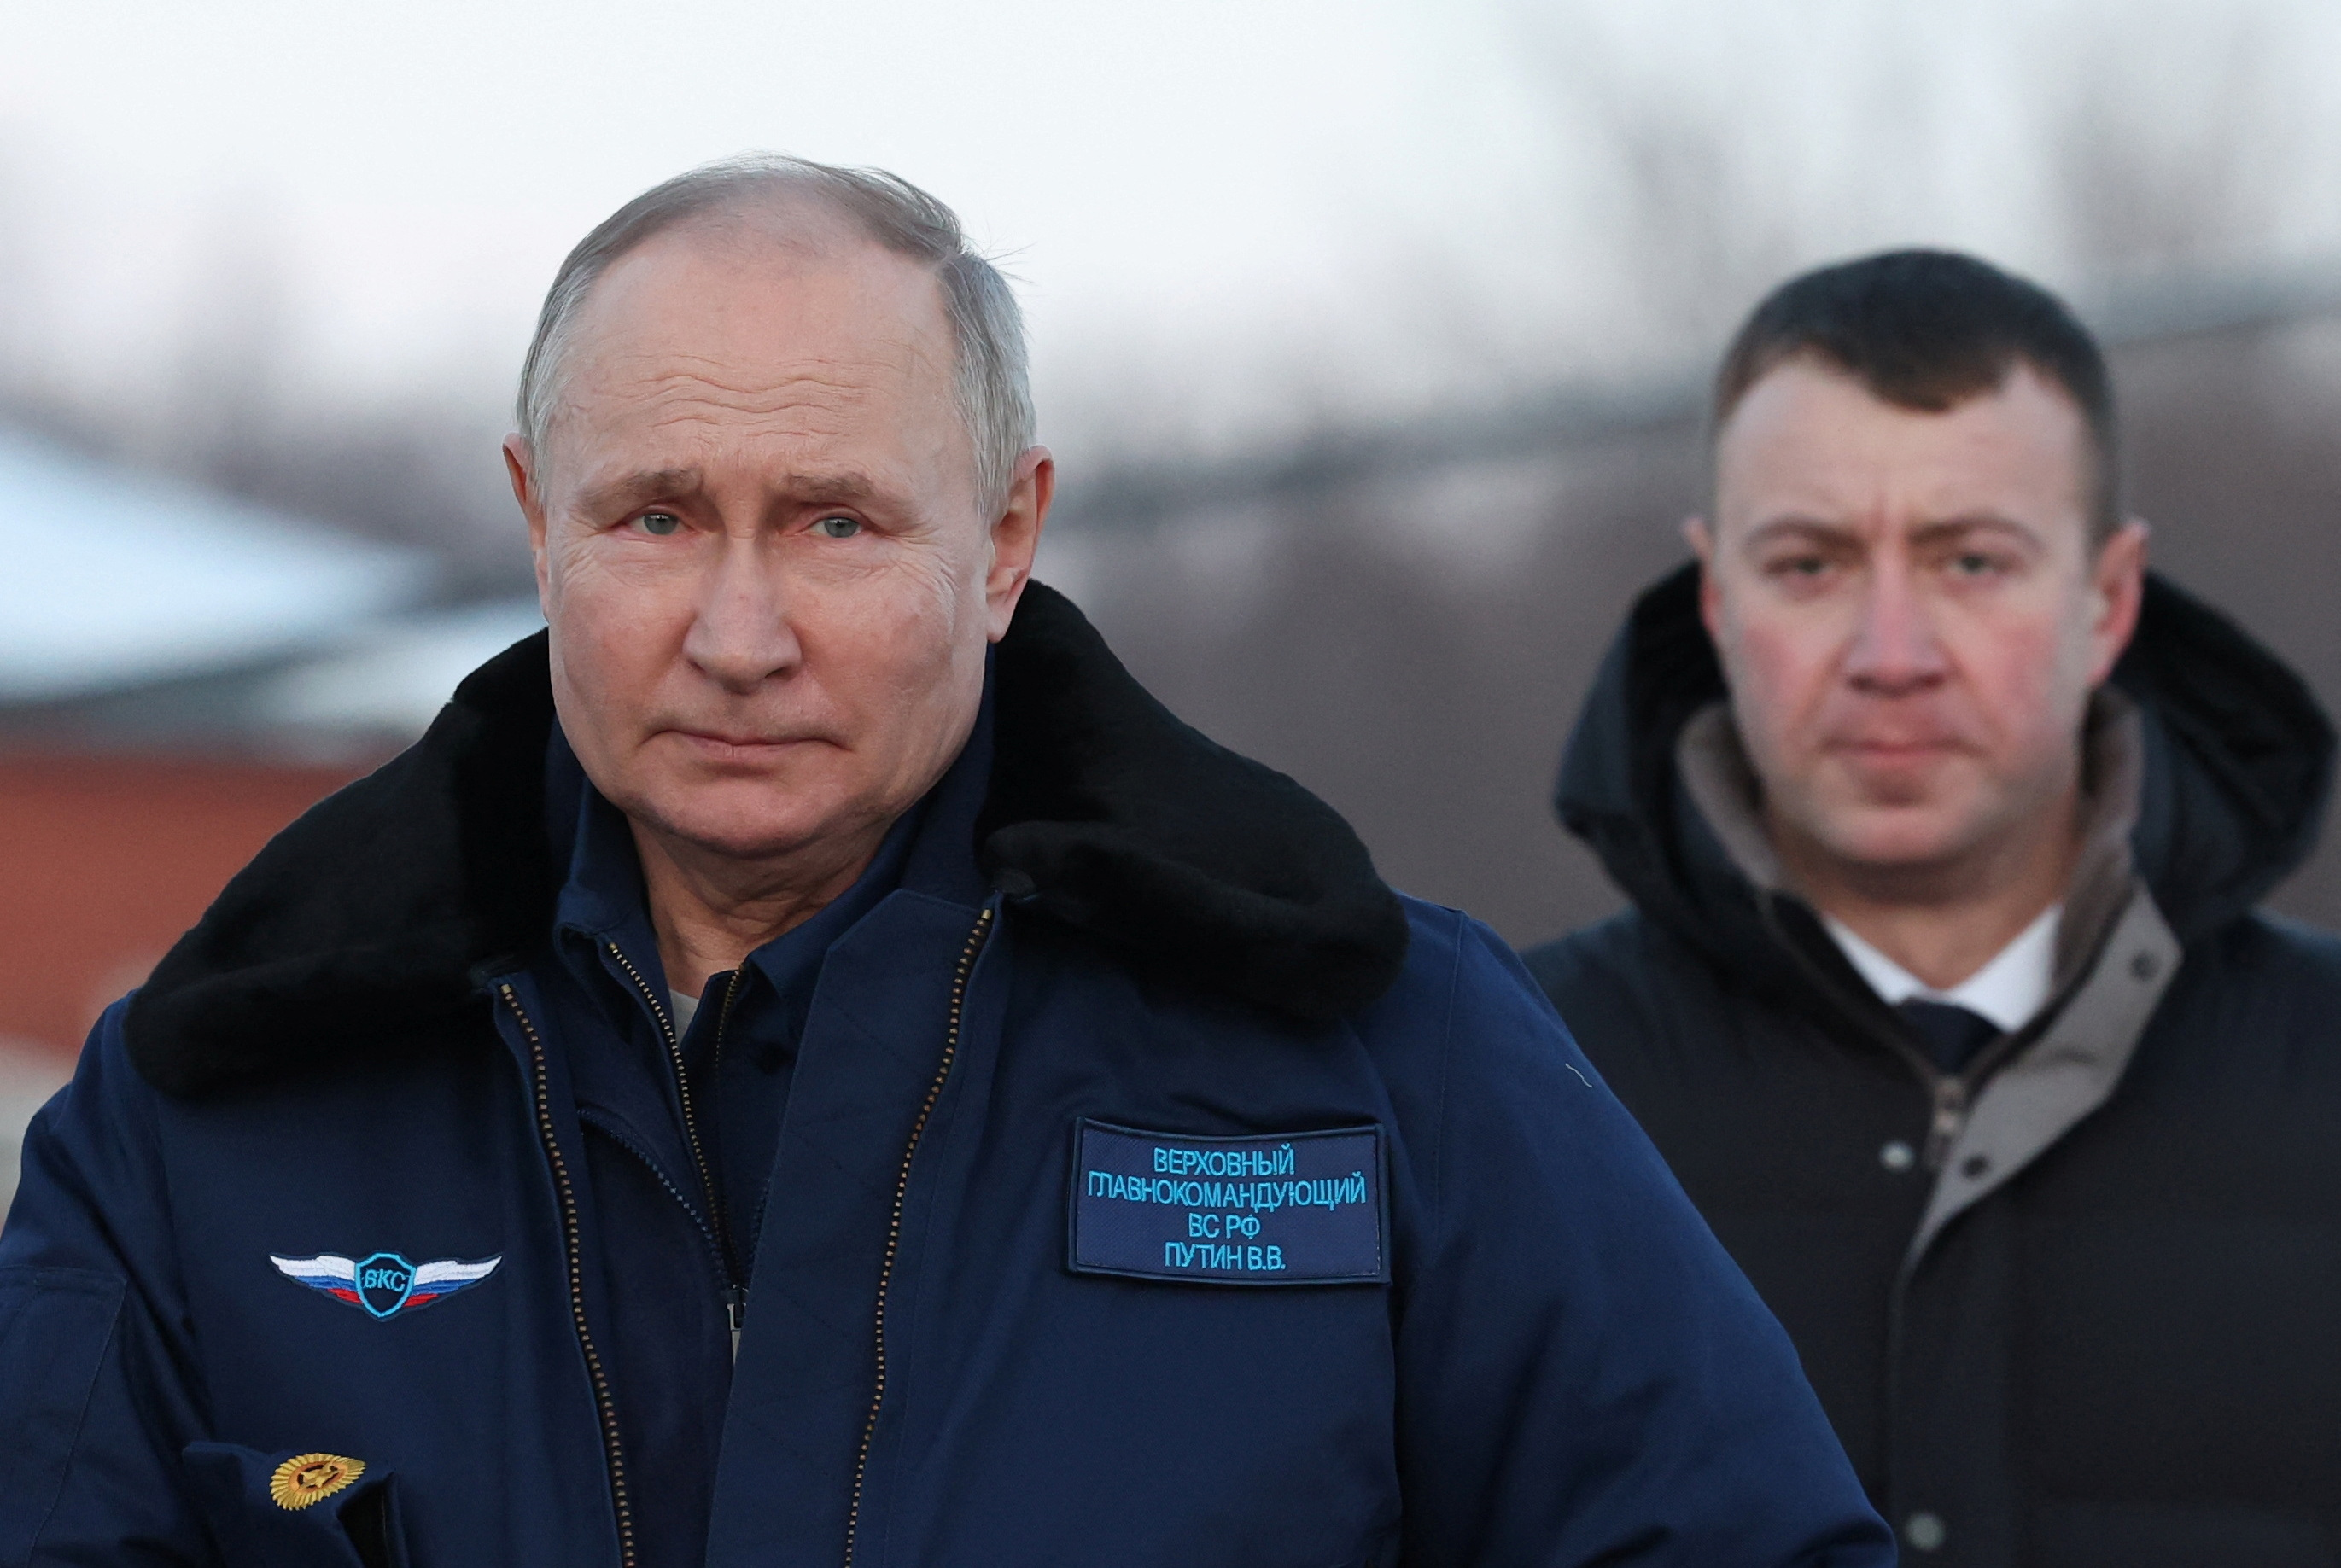 Vladimir Poutine salue les «héros» combattant en Ukraine ainsi que le réarmement de la Russie